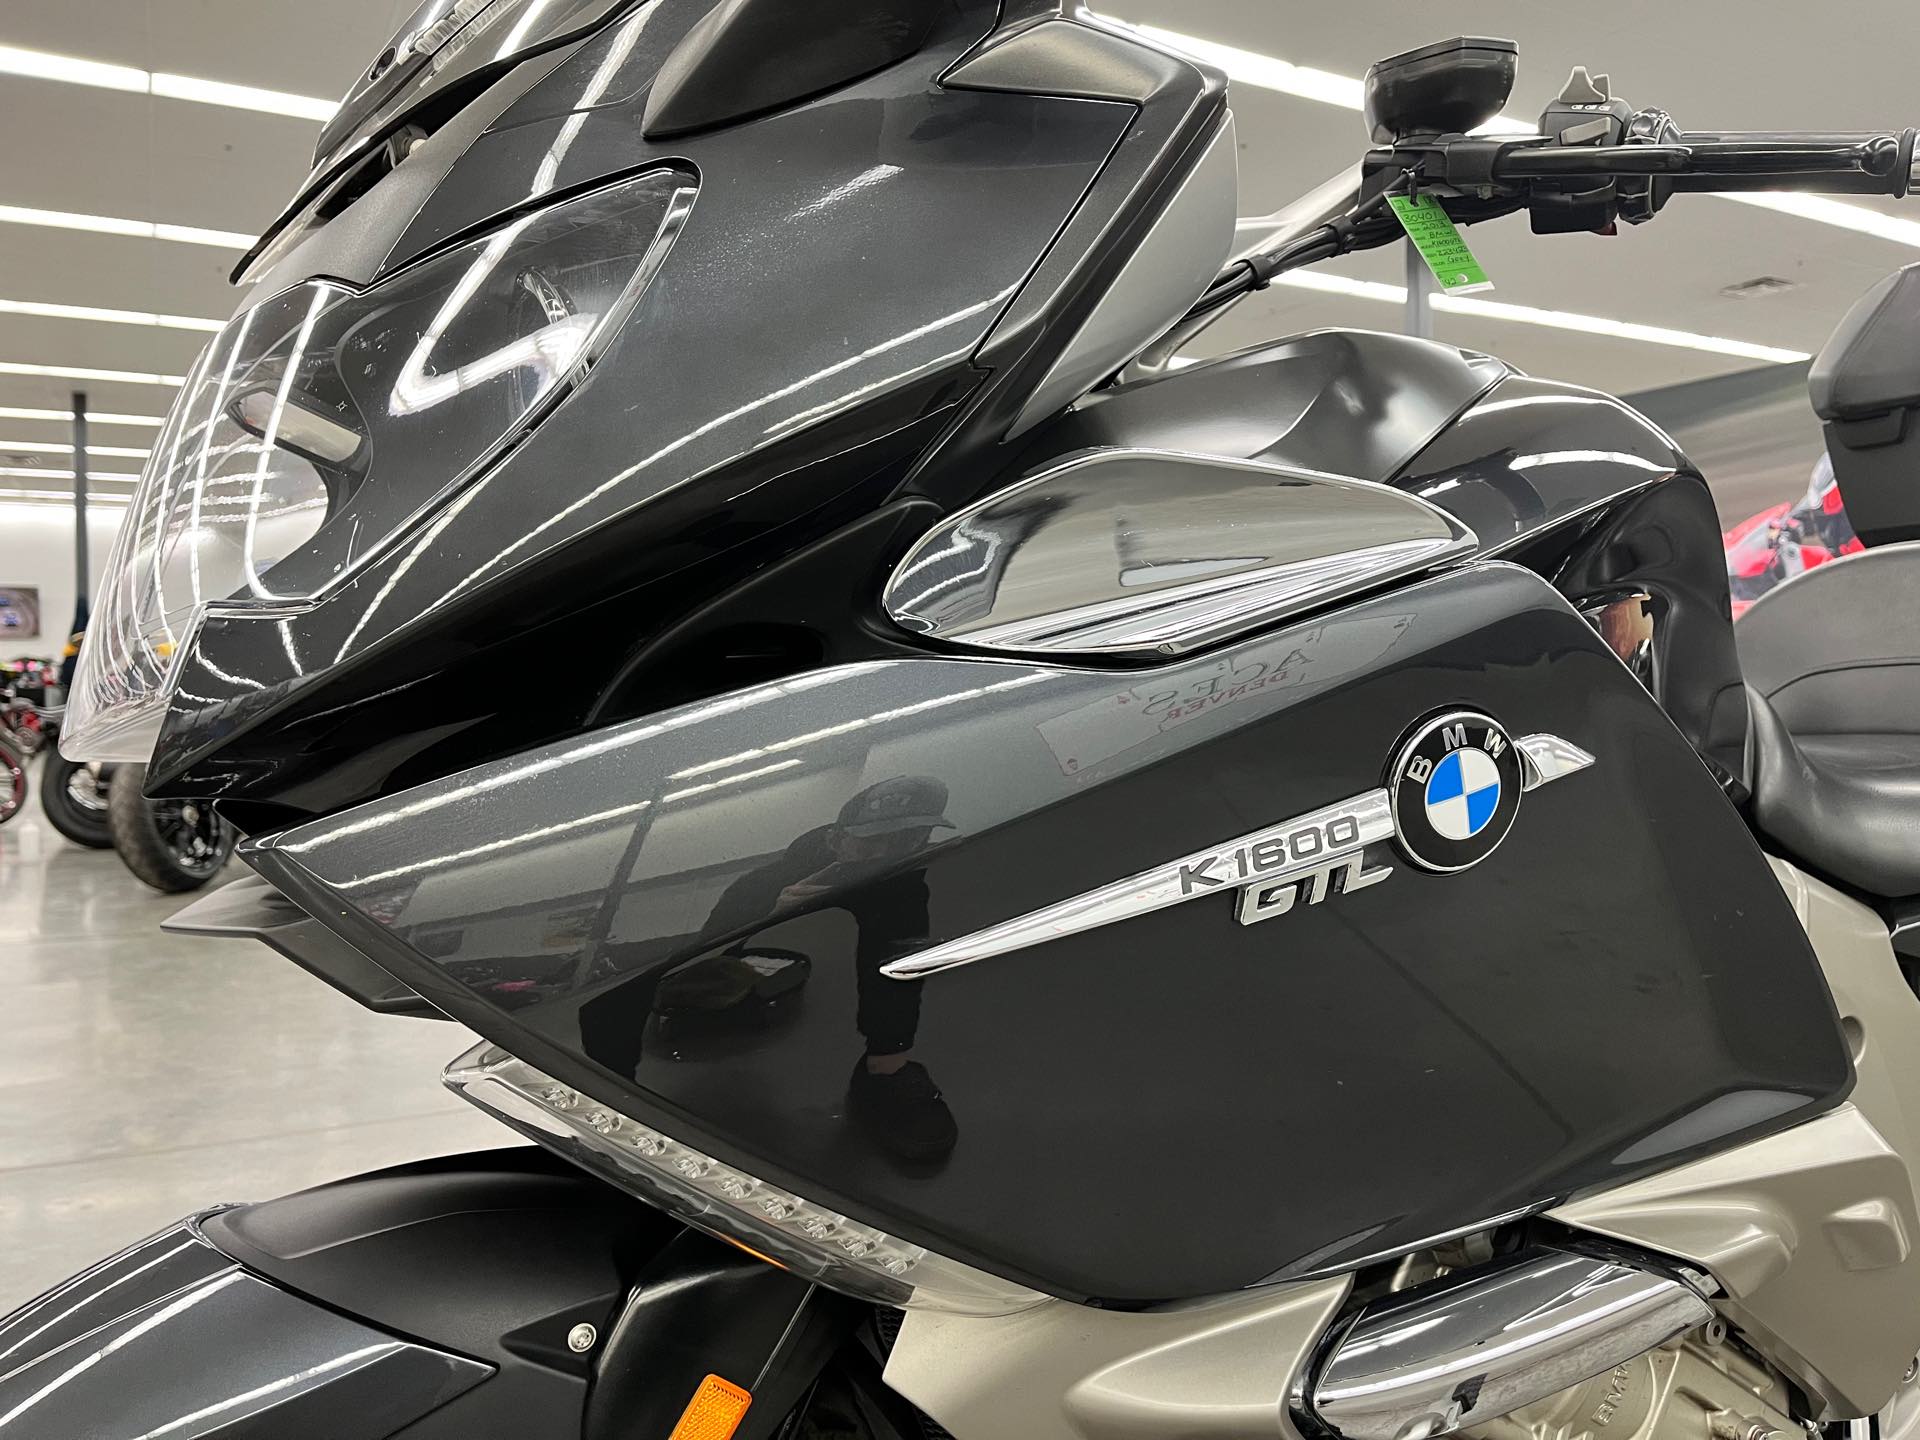 2013 BMW K 1600 GTL at Aces Motorcycles - Denver